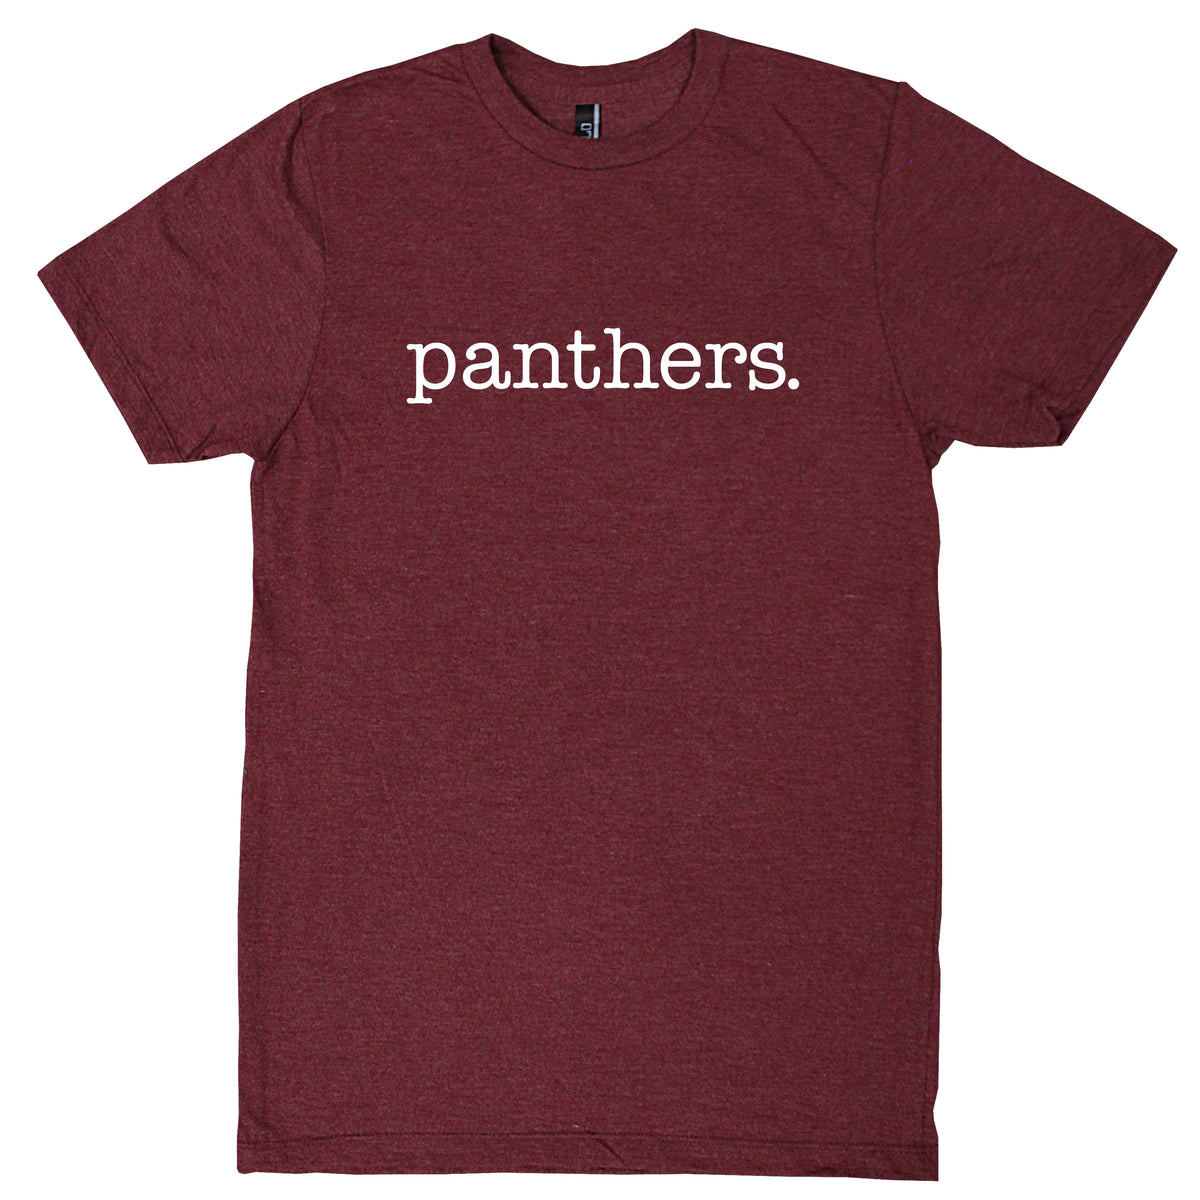 Benton Panthers. Youth T-Shirt